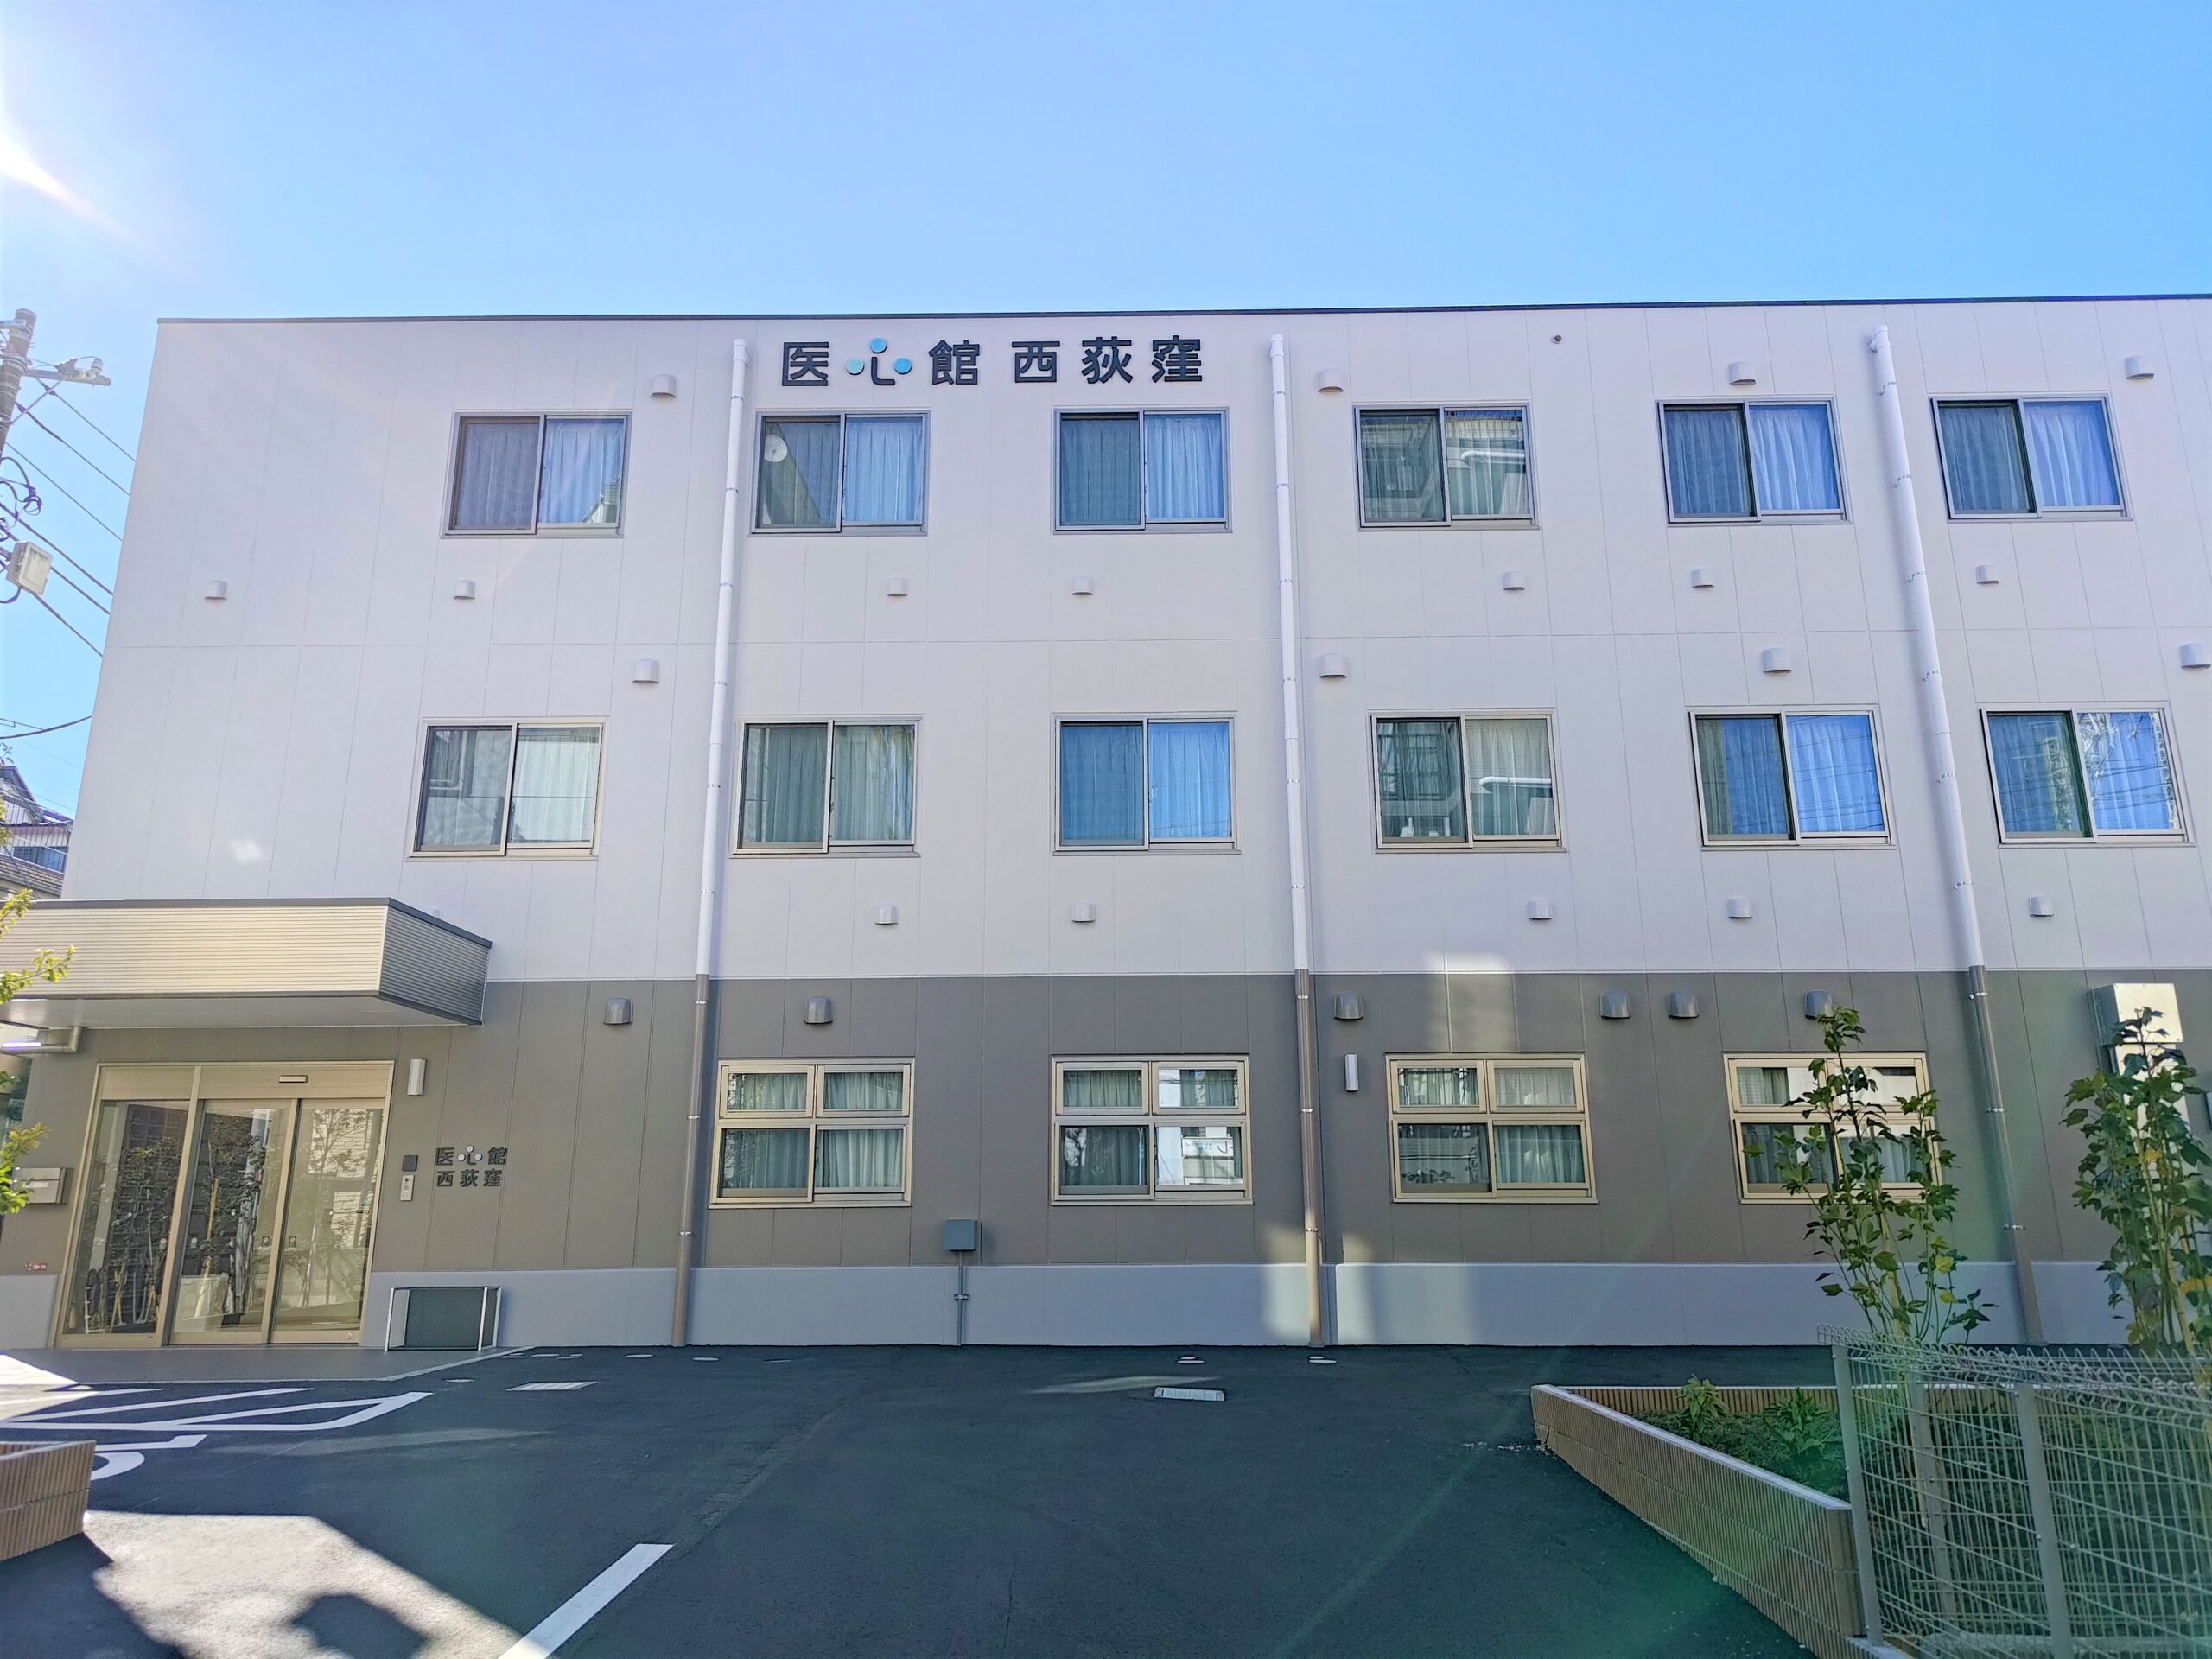 東京都では11施設目となる 有料老人ホーム「医心館 西荻窪」をオープンしました